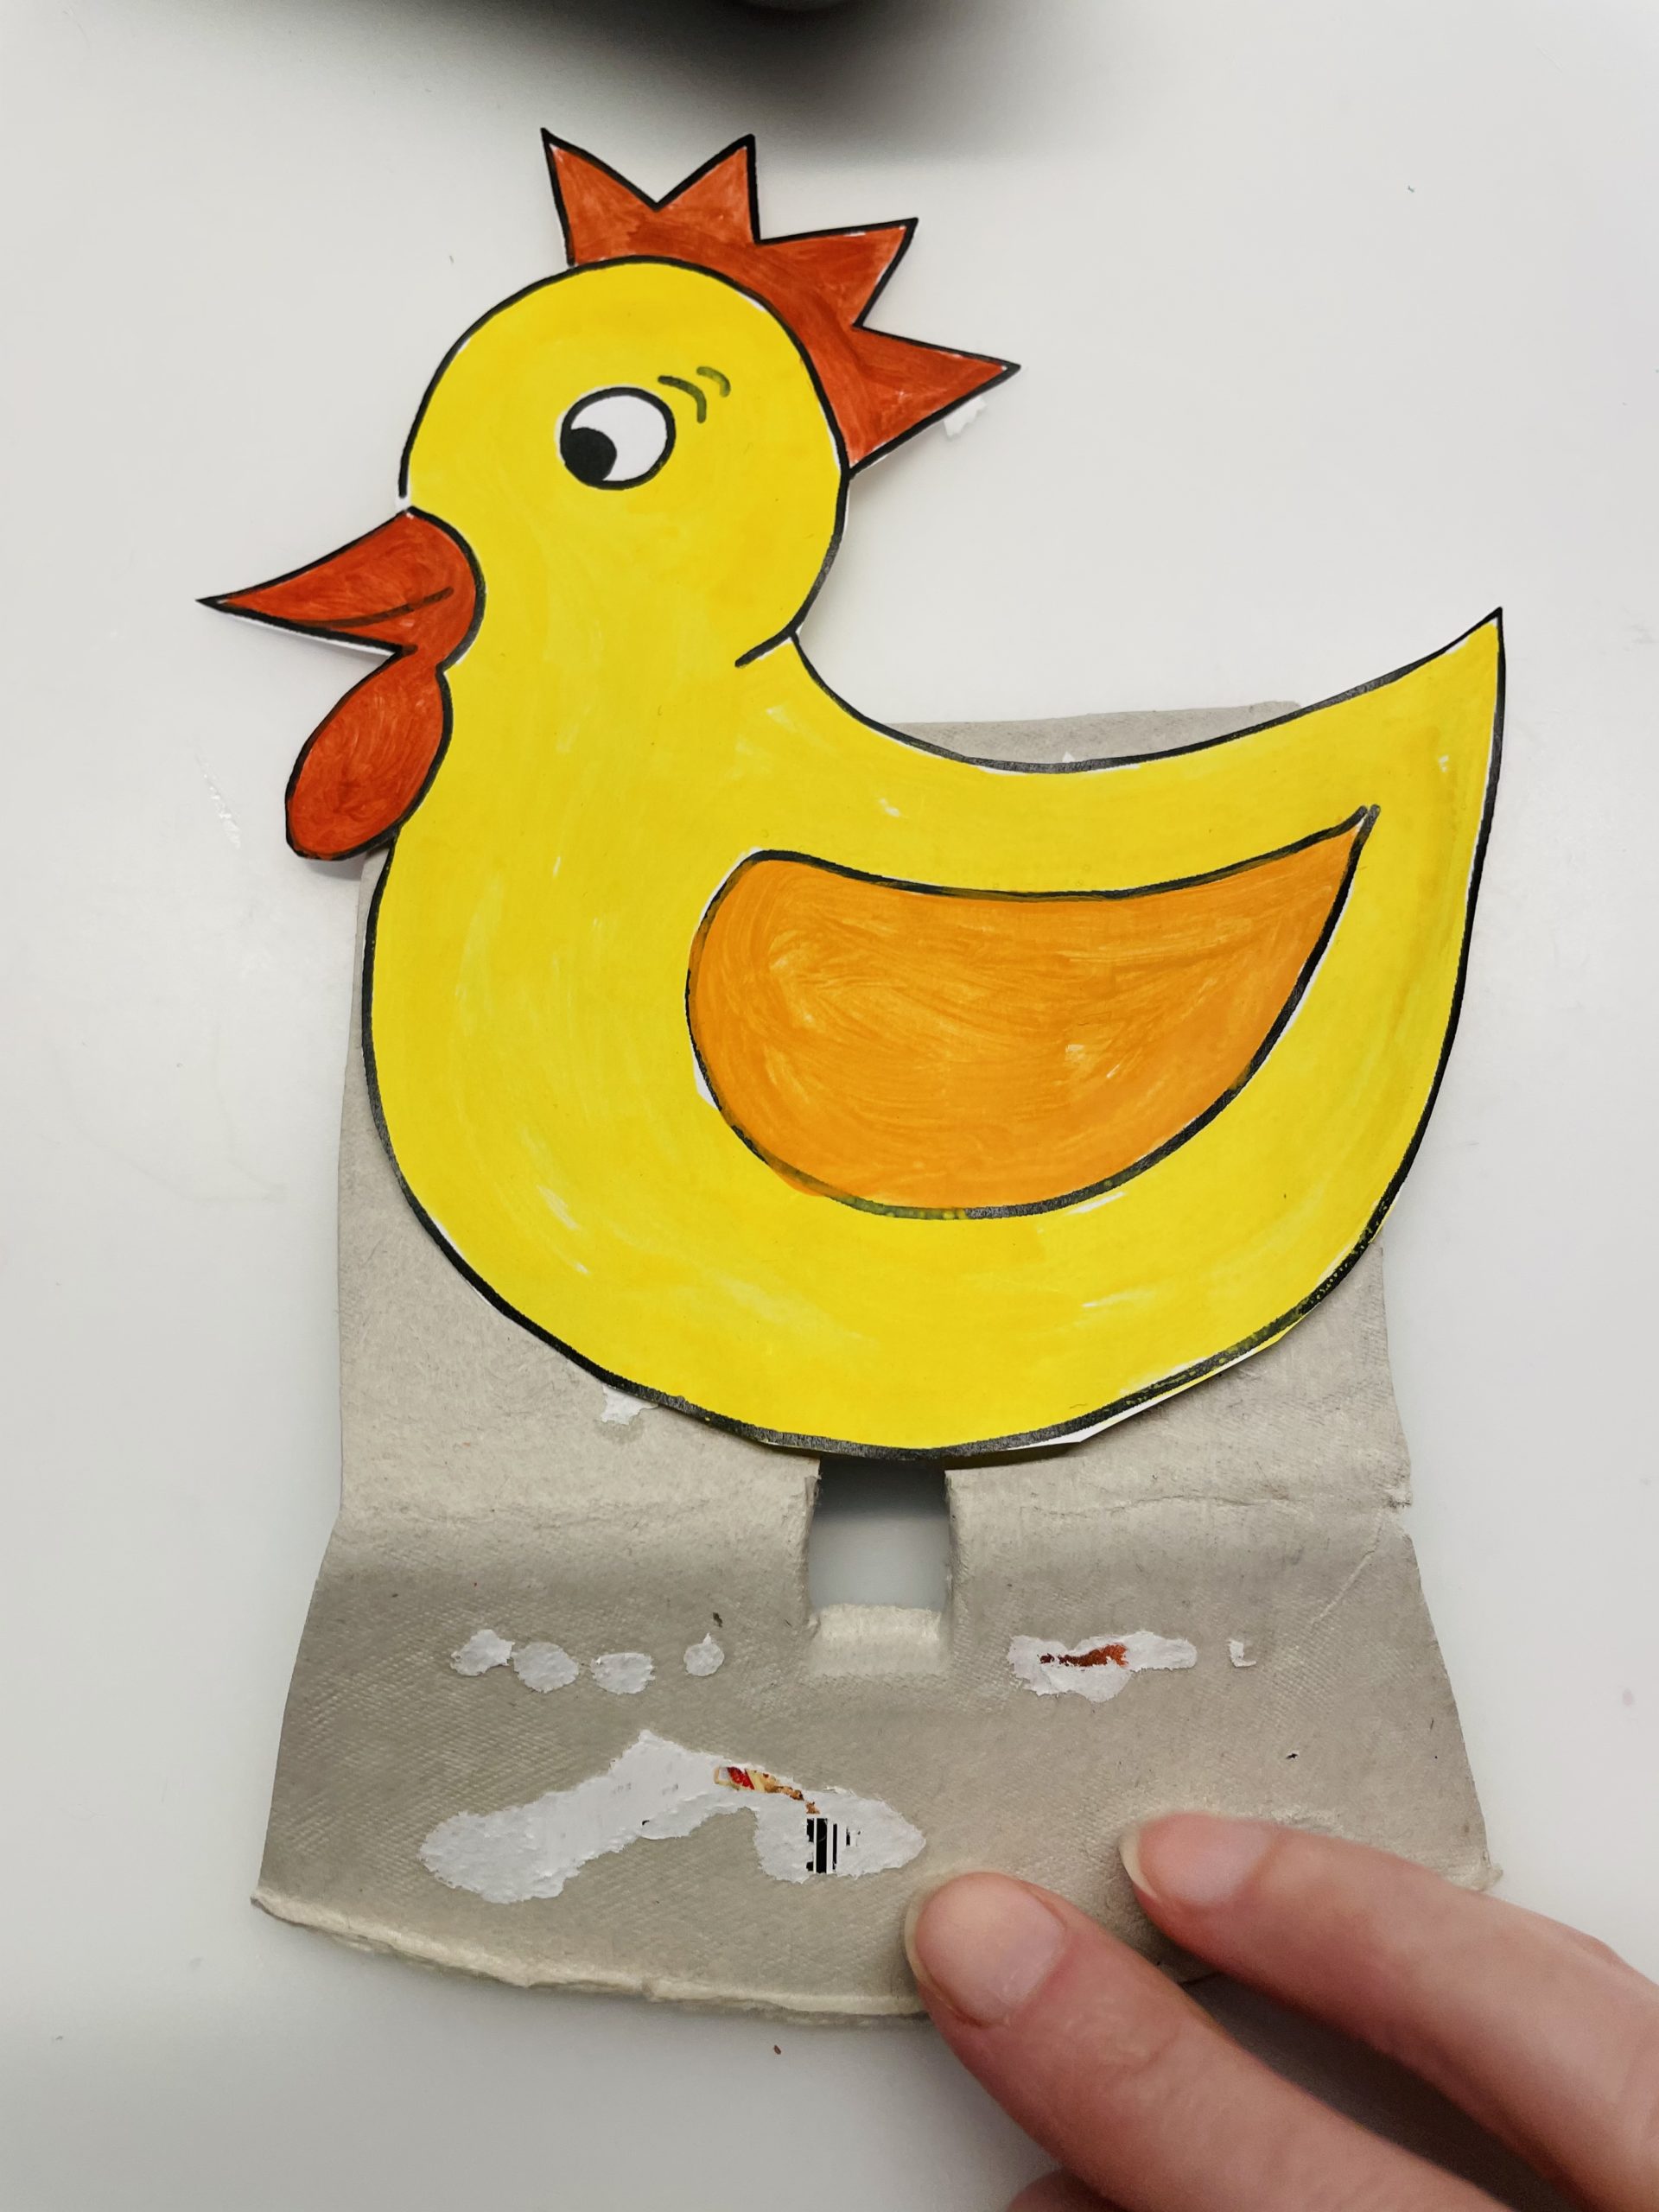 Bild zum Schritt 12 für das Bastel- und DIY-Abenteuer für Kinder: 'Legt das Huhn auf das ausgeschnittene Stück des Deckels und...'